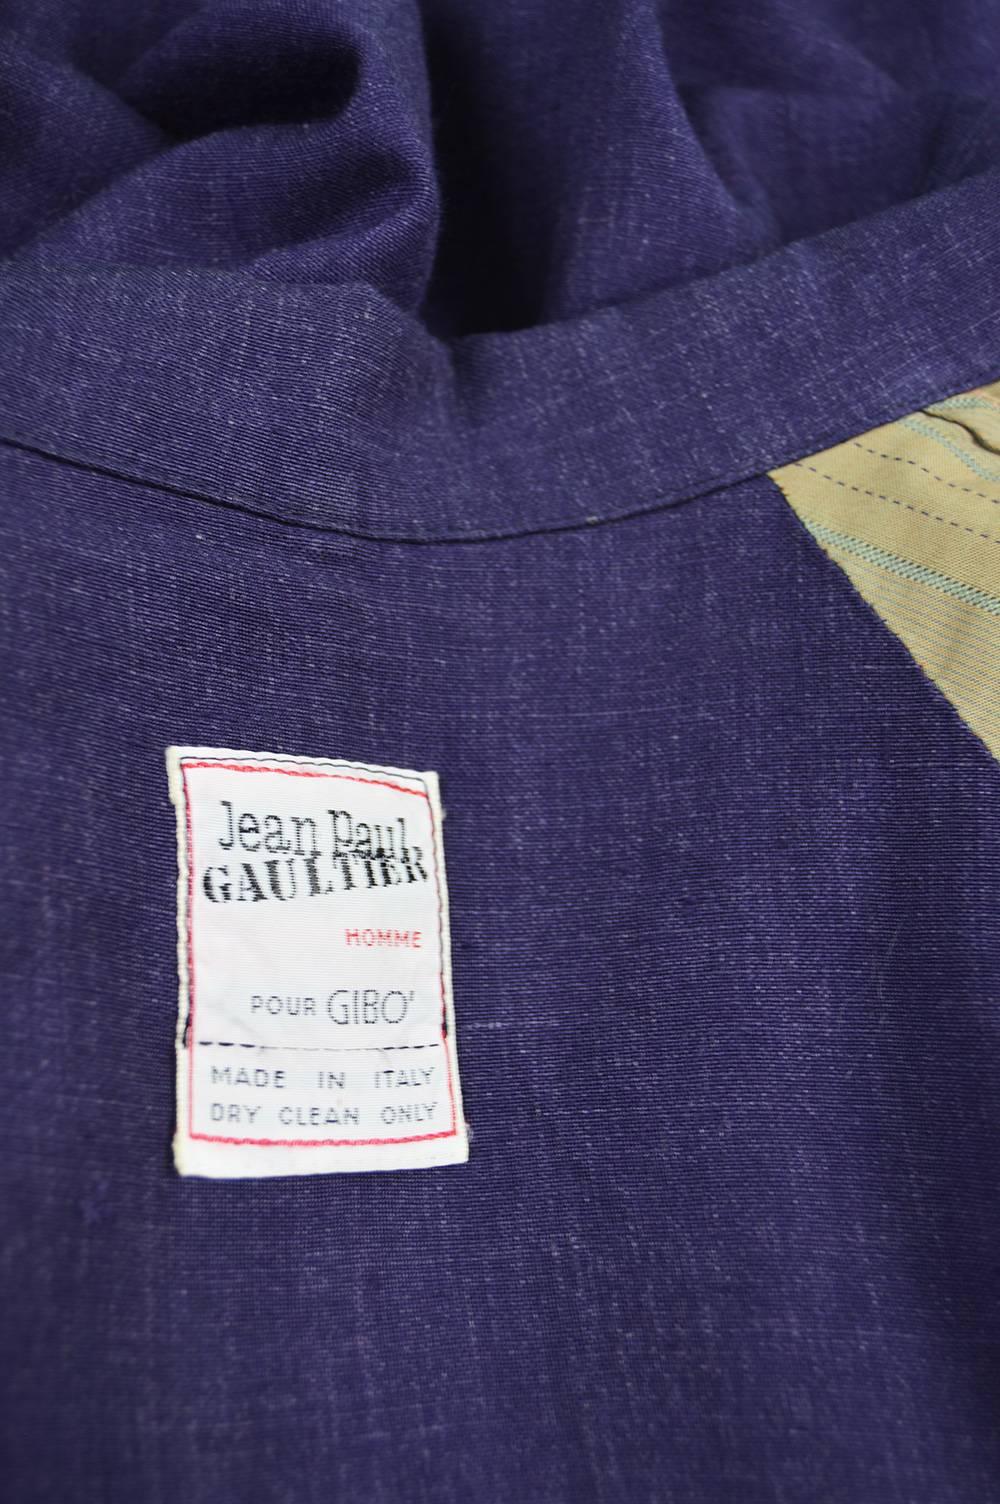 Jean Paul Gaultier Homme Pour Gibo Loose Purple Linen Coat, 1980s For Sale 4